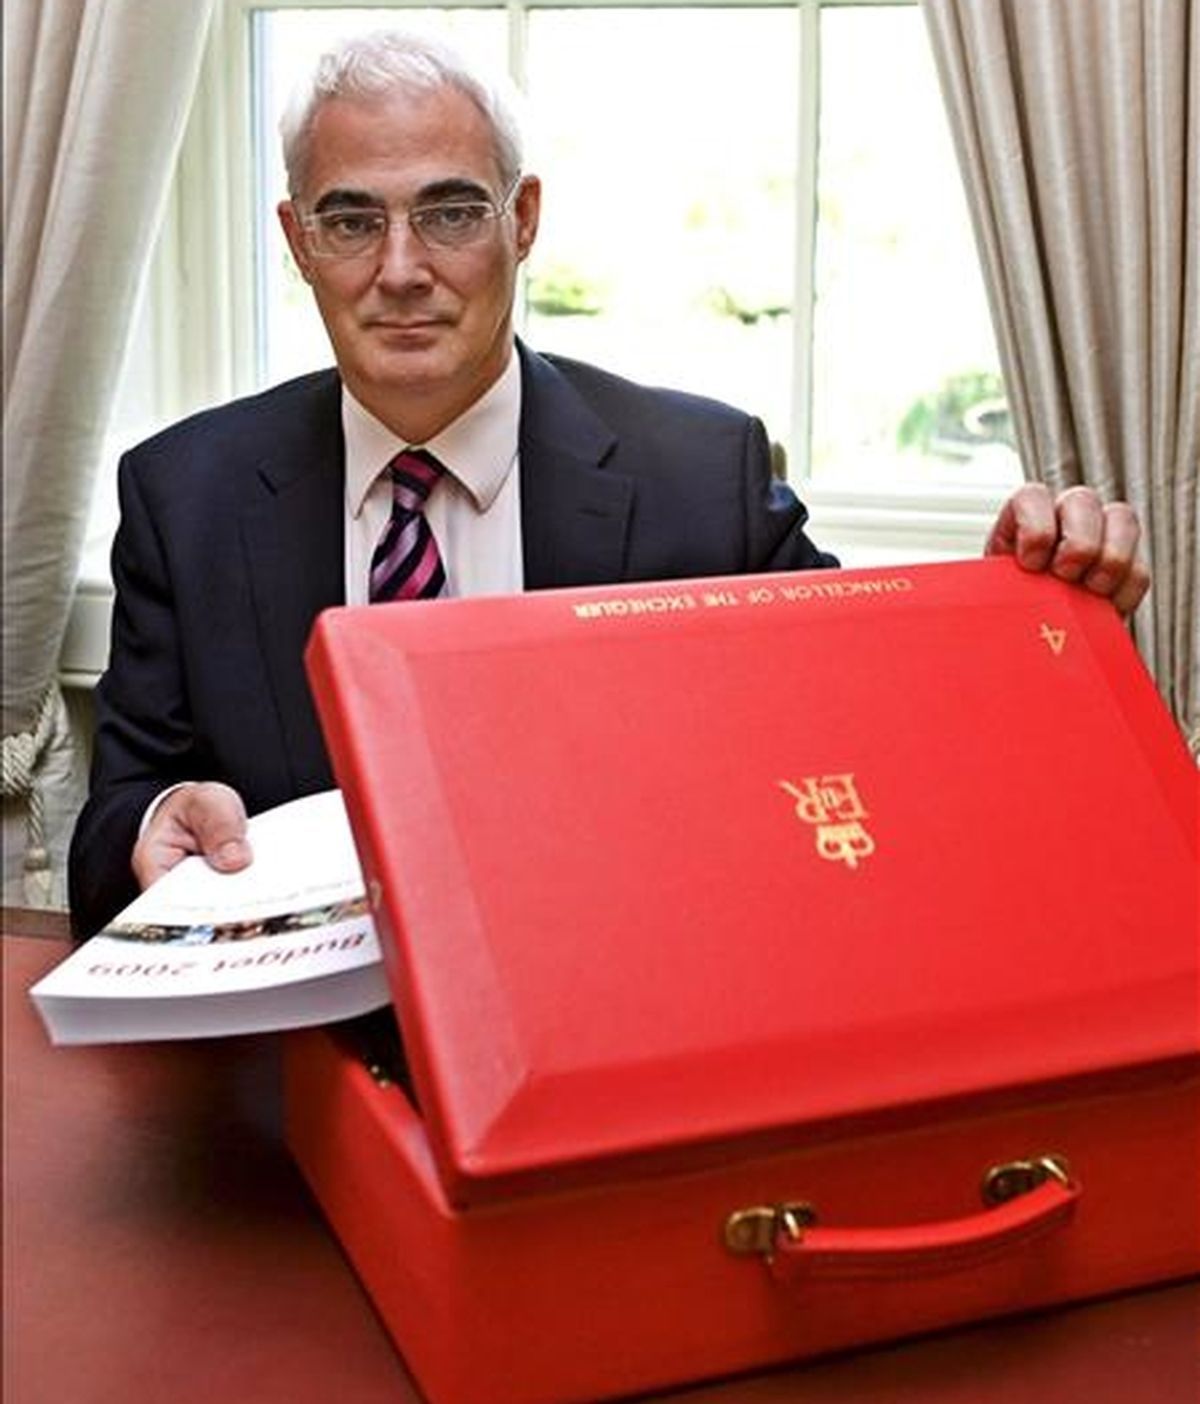 El ministro británico de Economía, Alistair Darling, introduce en su cartera el ejemplar con los presupuestos del Estado, en su oficina en el número 11 de Downing Street, Londres (Reino Unido). EFE/Archivo